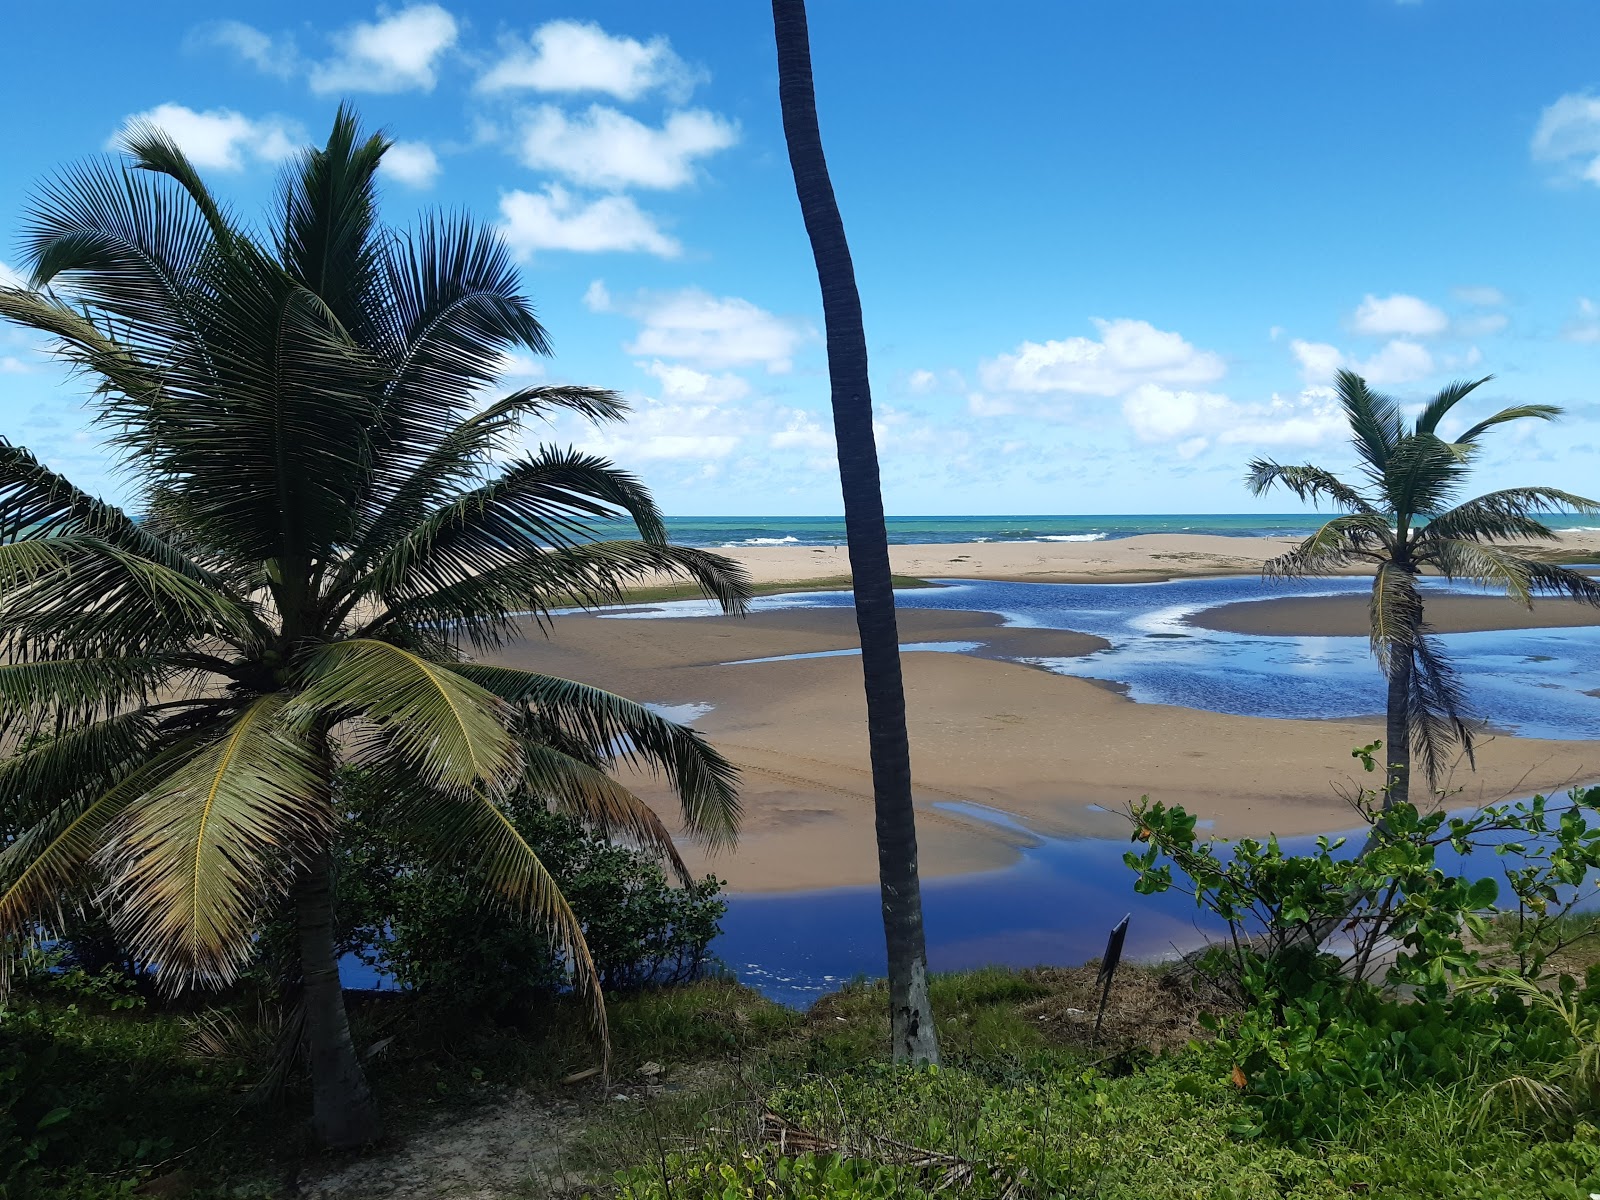 Fotografie cu Praia de Imbassai - locul popular printre cunoscătorii de relaxare